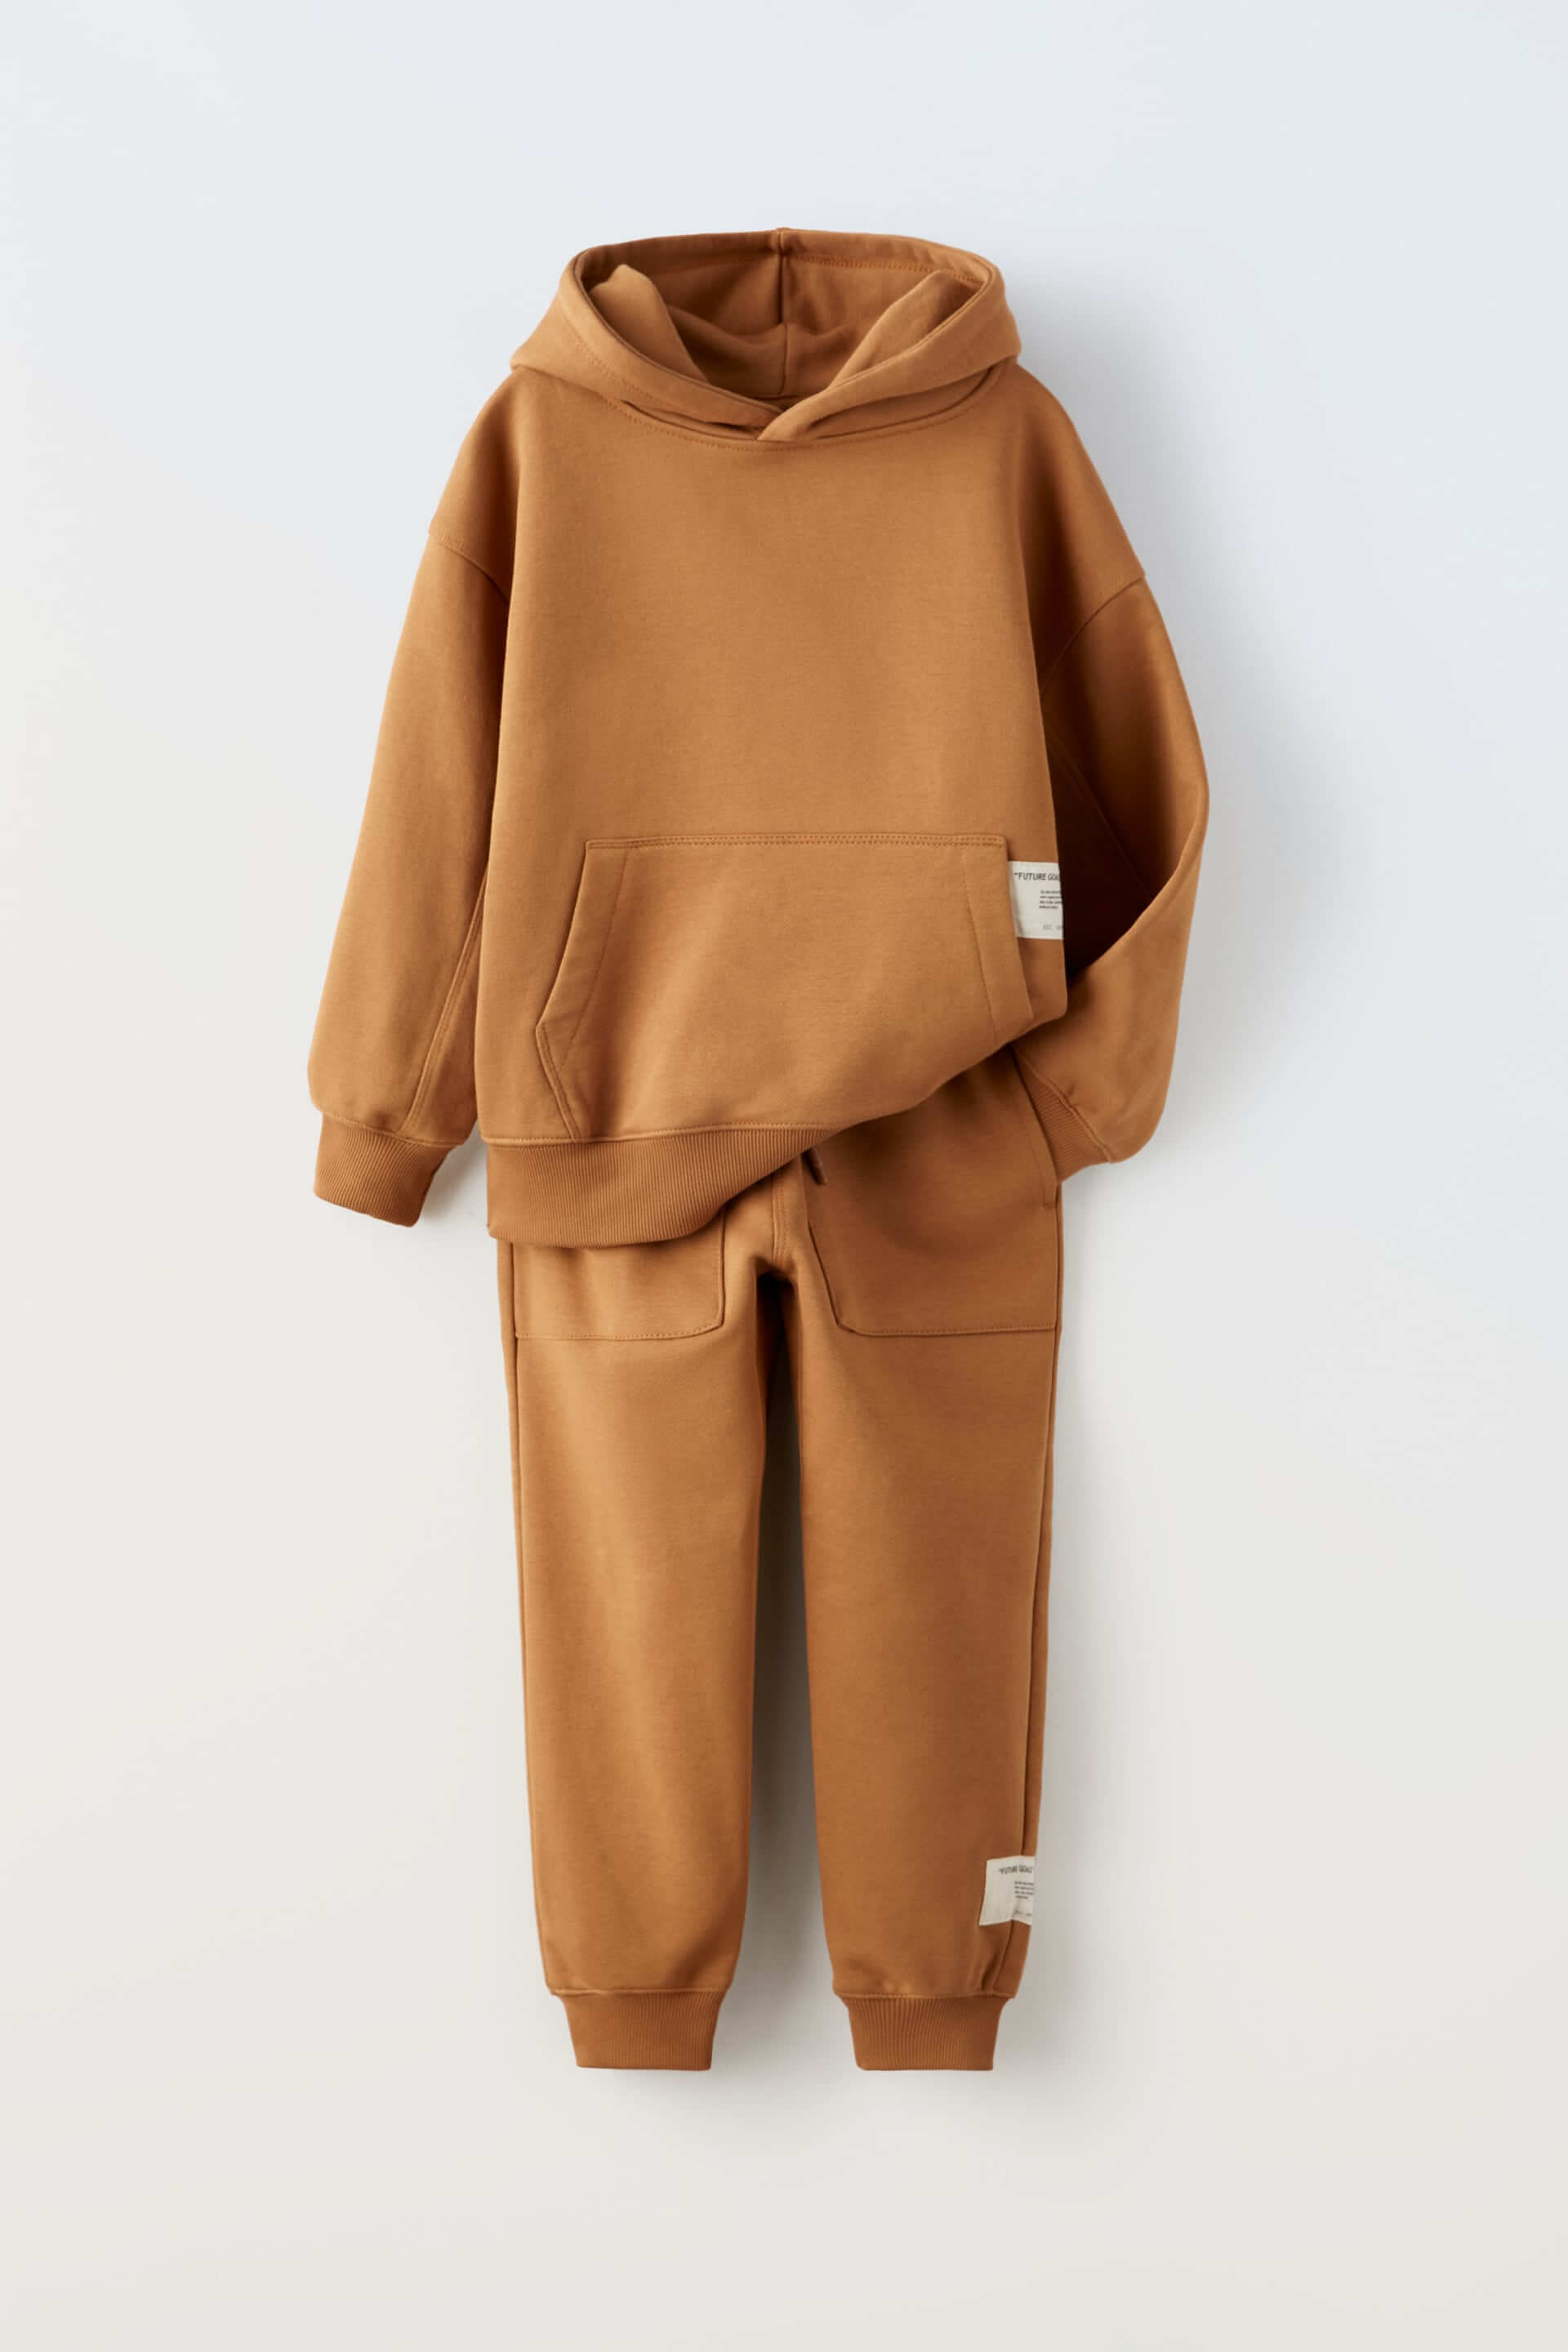 Комплект из худи и брюк Zara Plush, 2 предмета, терракотовый комплект zara kids plush 2 предмета темно серый